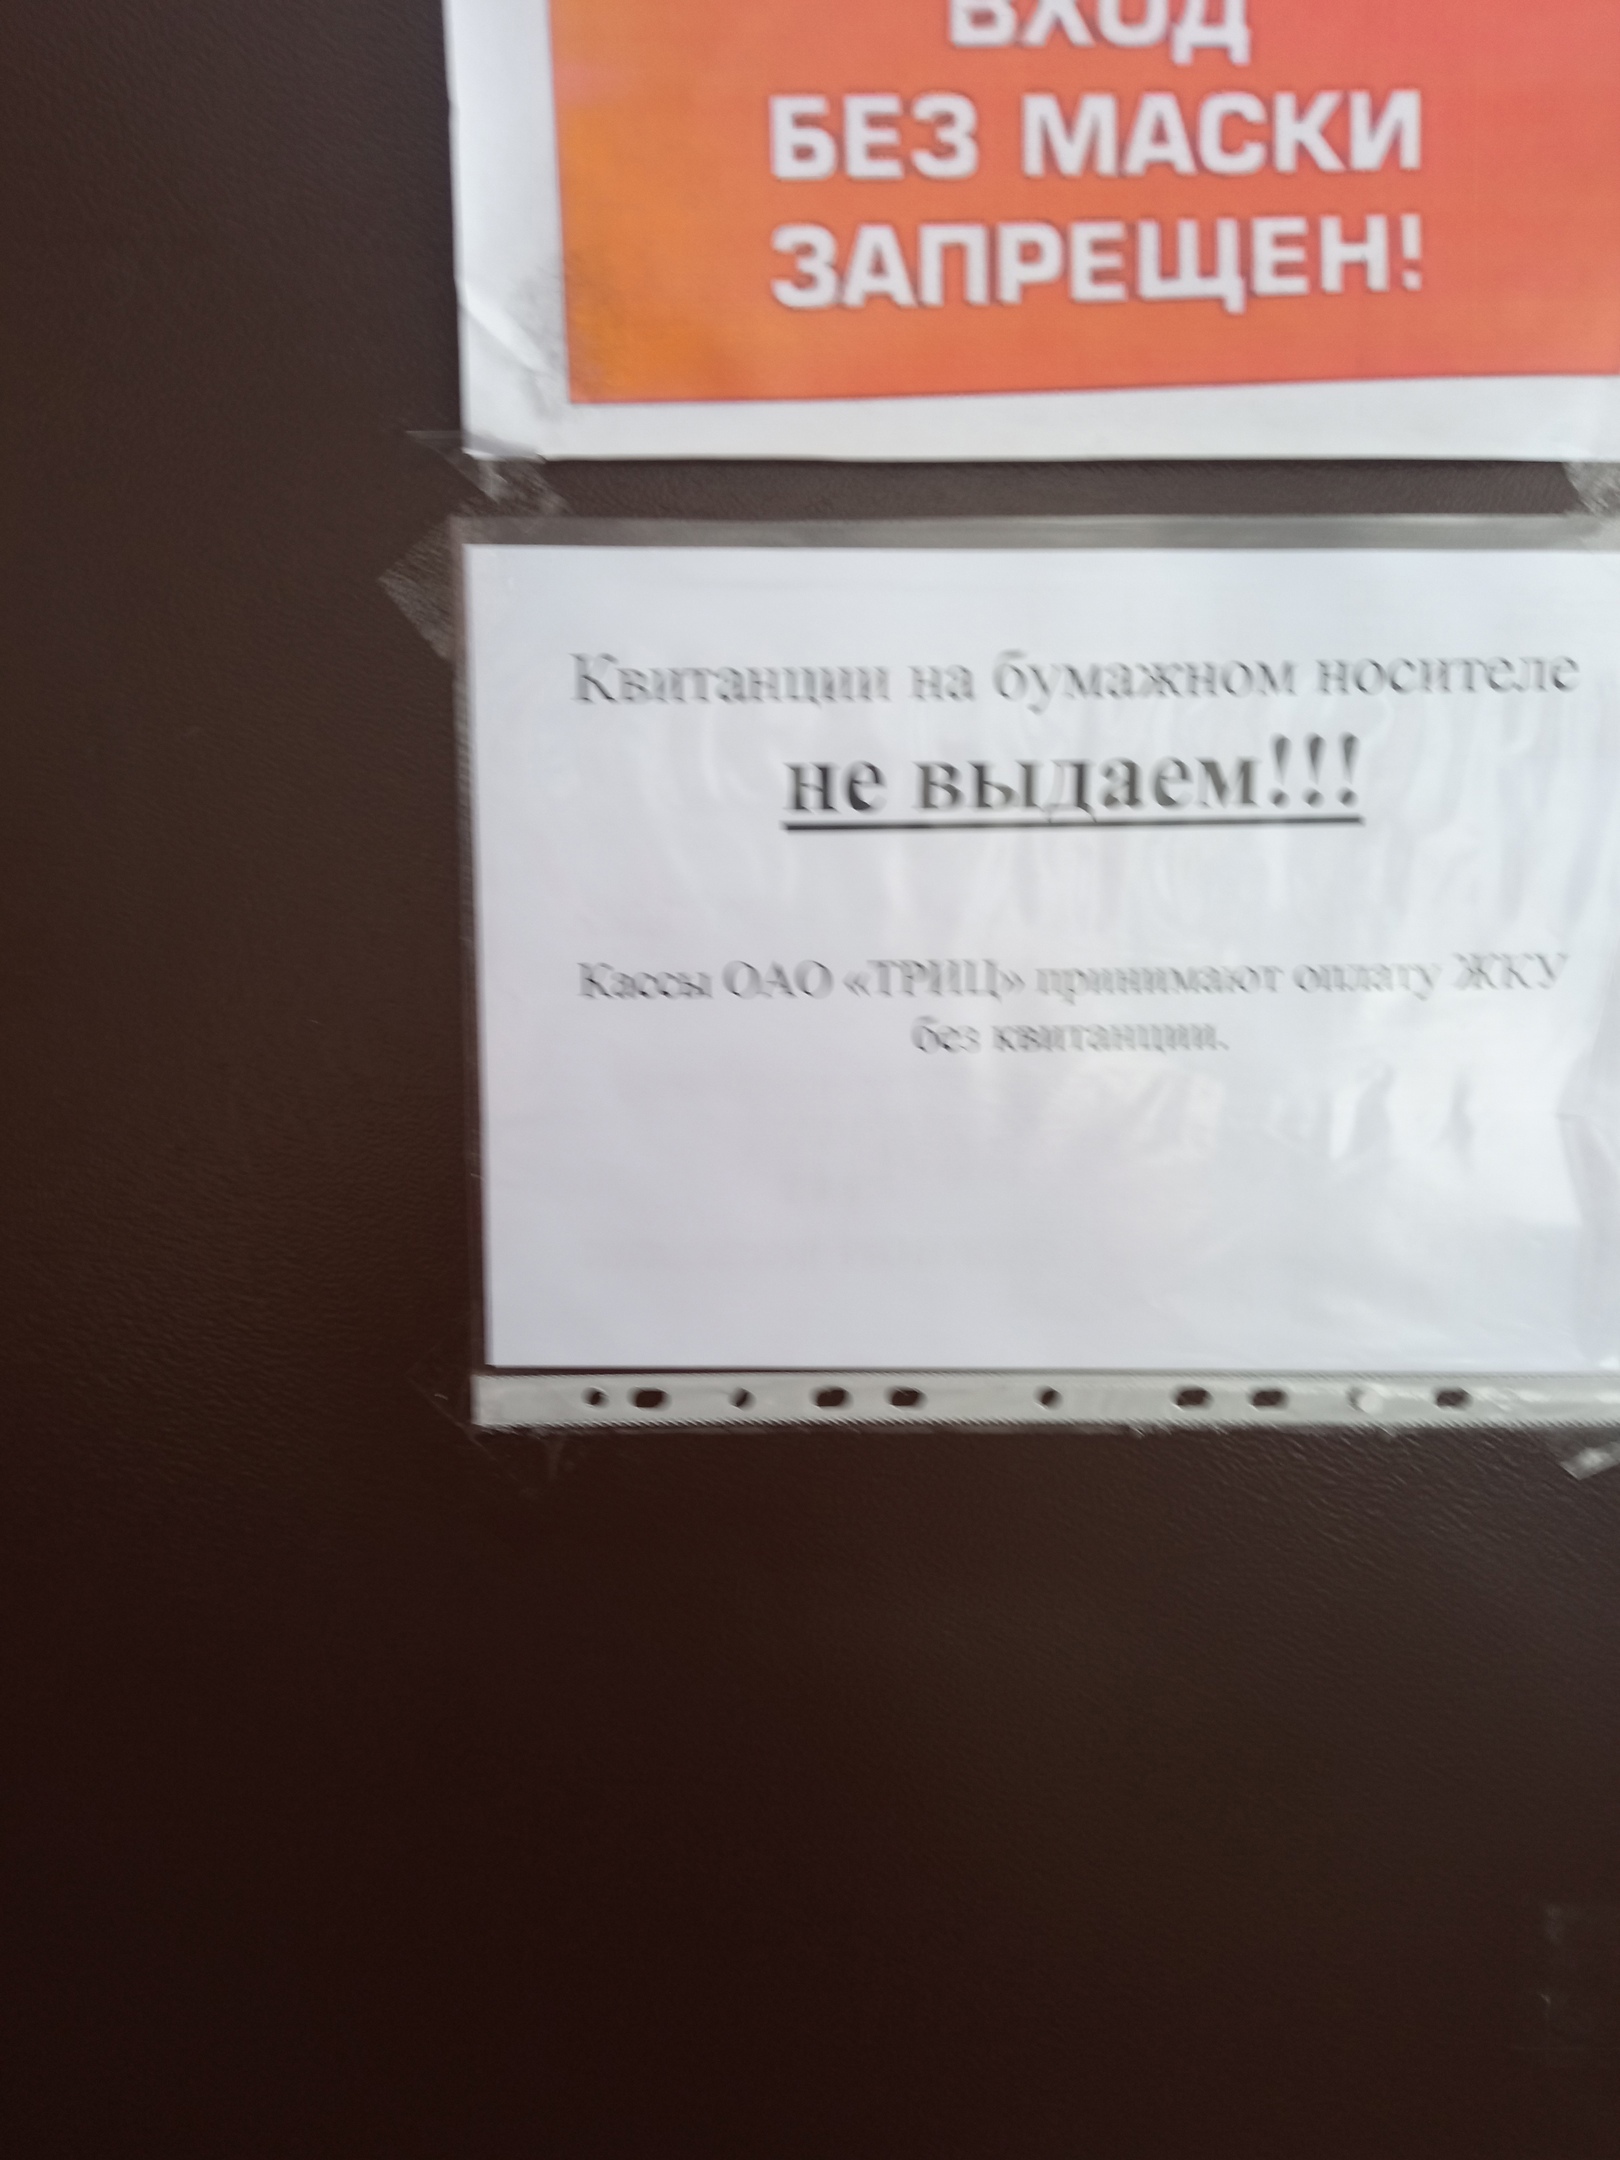 Такое объявление тюменка заметила на двери одного из тюменских отделений ТРИЦ